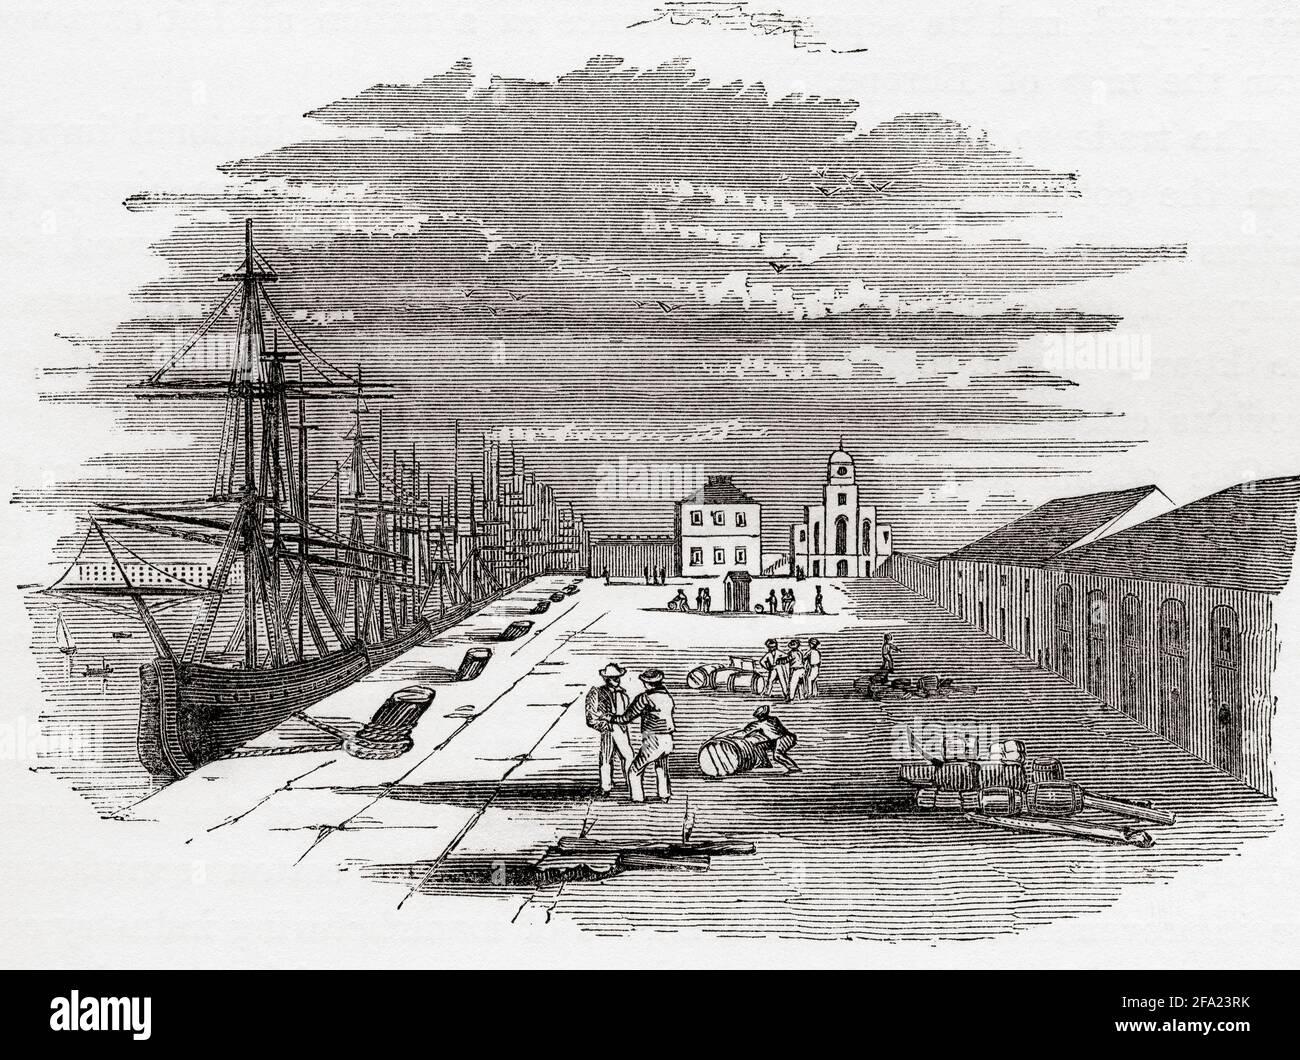 The East India Import Dock, Blackwall, London, England, hier im frühen 19. Jahrhundert zu sehen. Der Importdock wurde gebaut, um Platz zum Entladen der East Indiamen zu bieten, die von ihren Reisen zurückkehrten. Aus der Geschichte des Fortschritts in Großbritannien, veröffentlicht 1866. Stockfoto